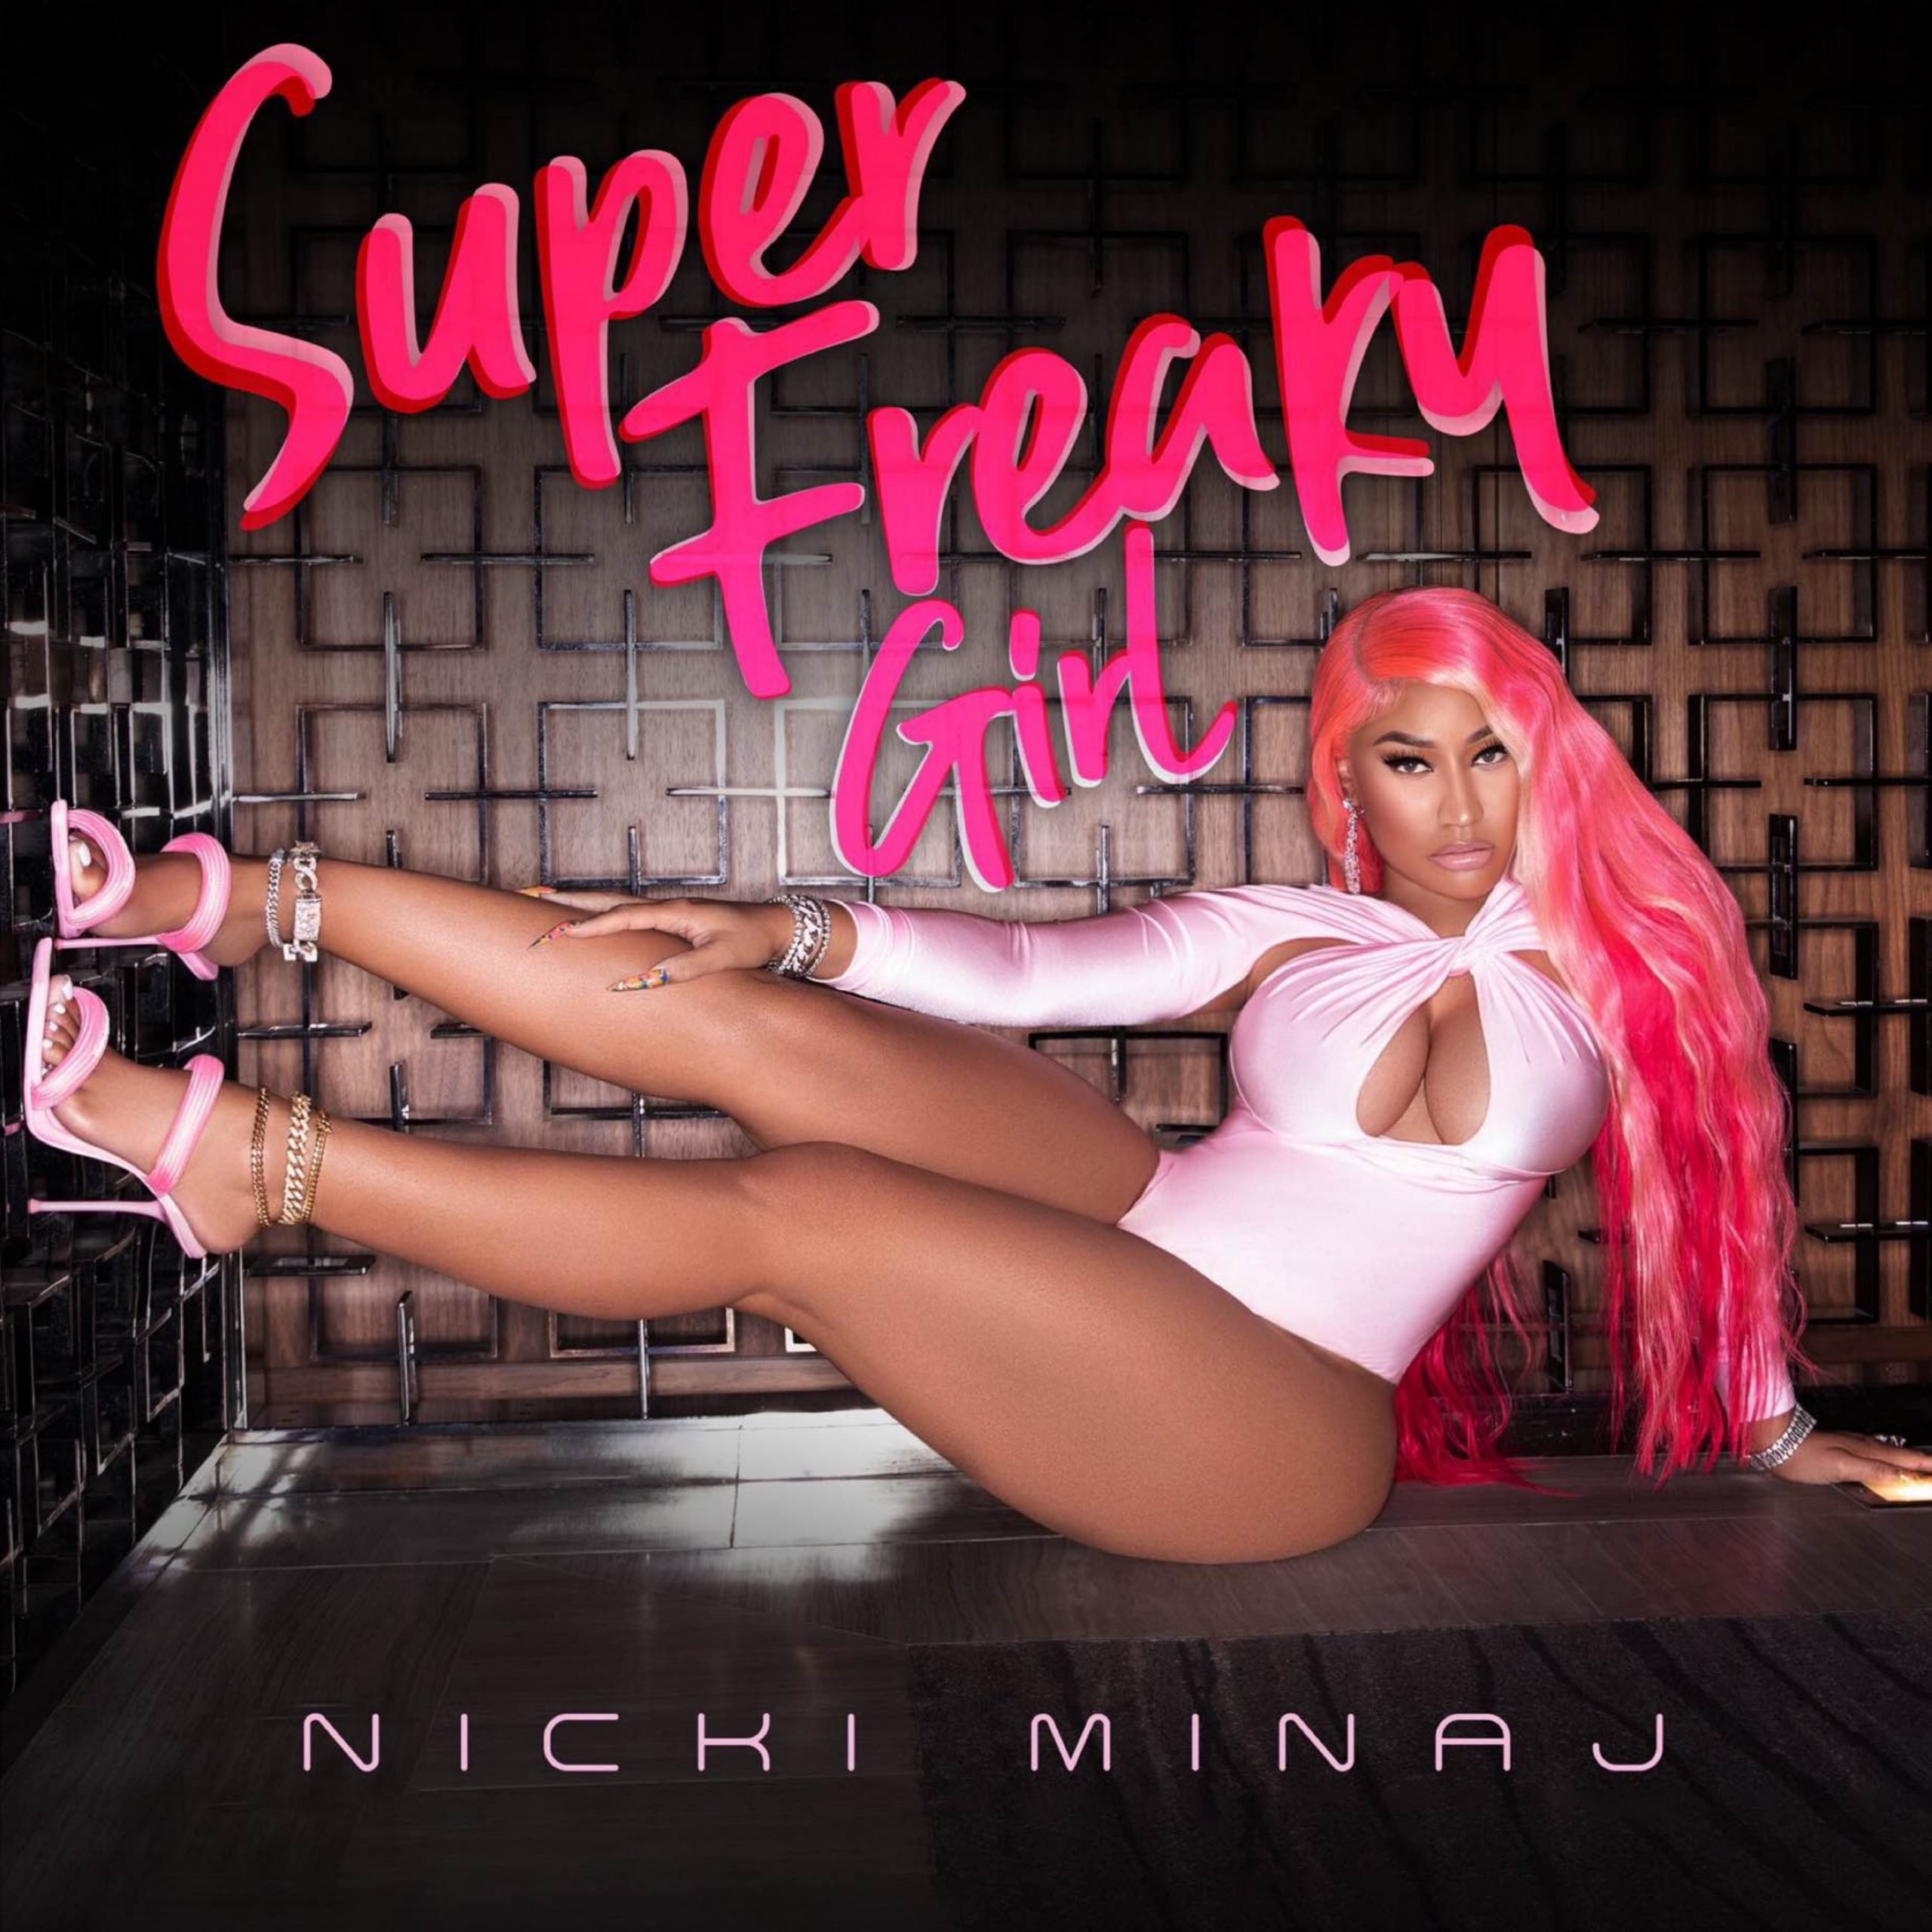 Nicki Minaj- Super freaky girl